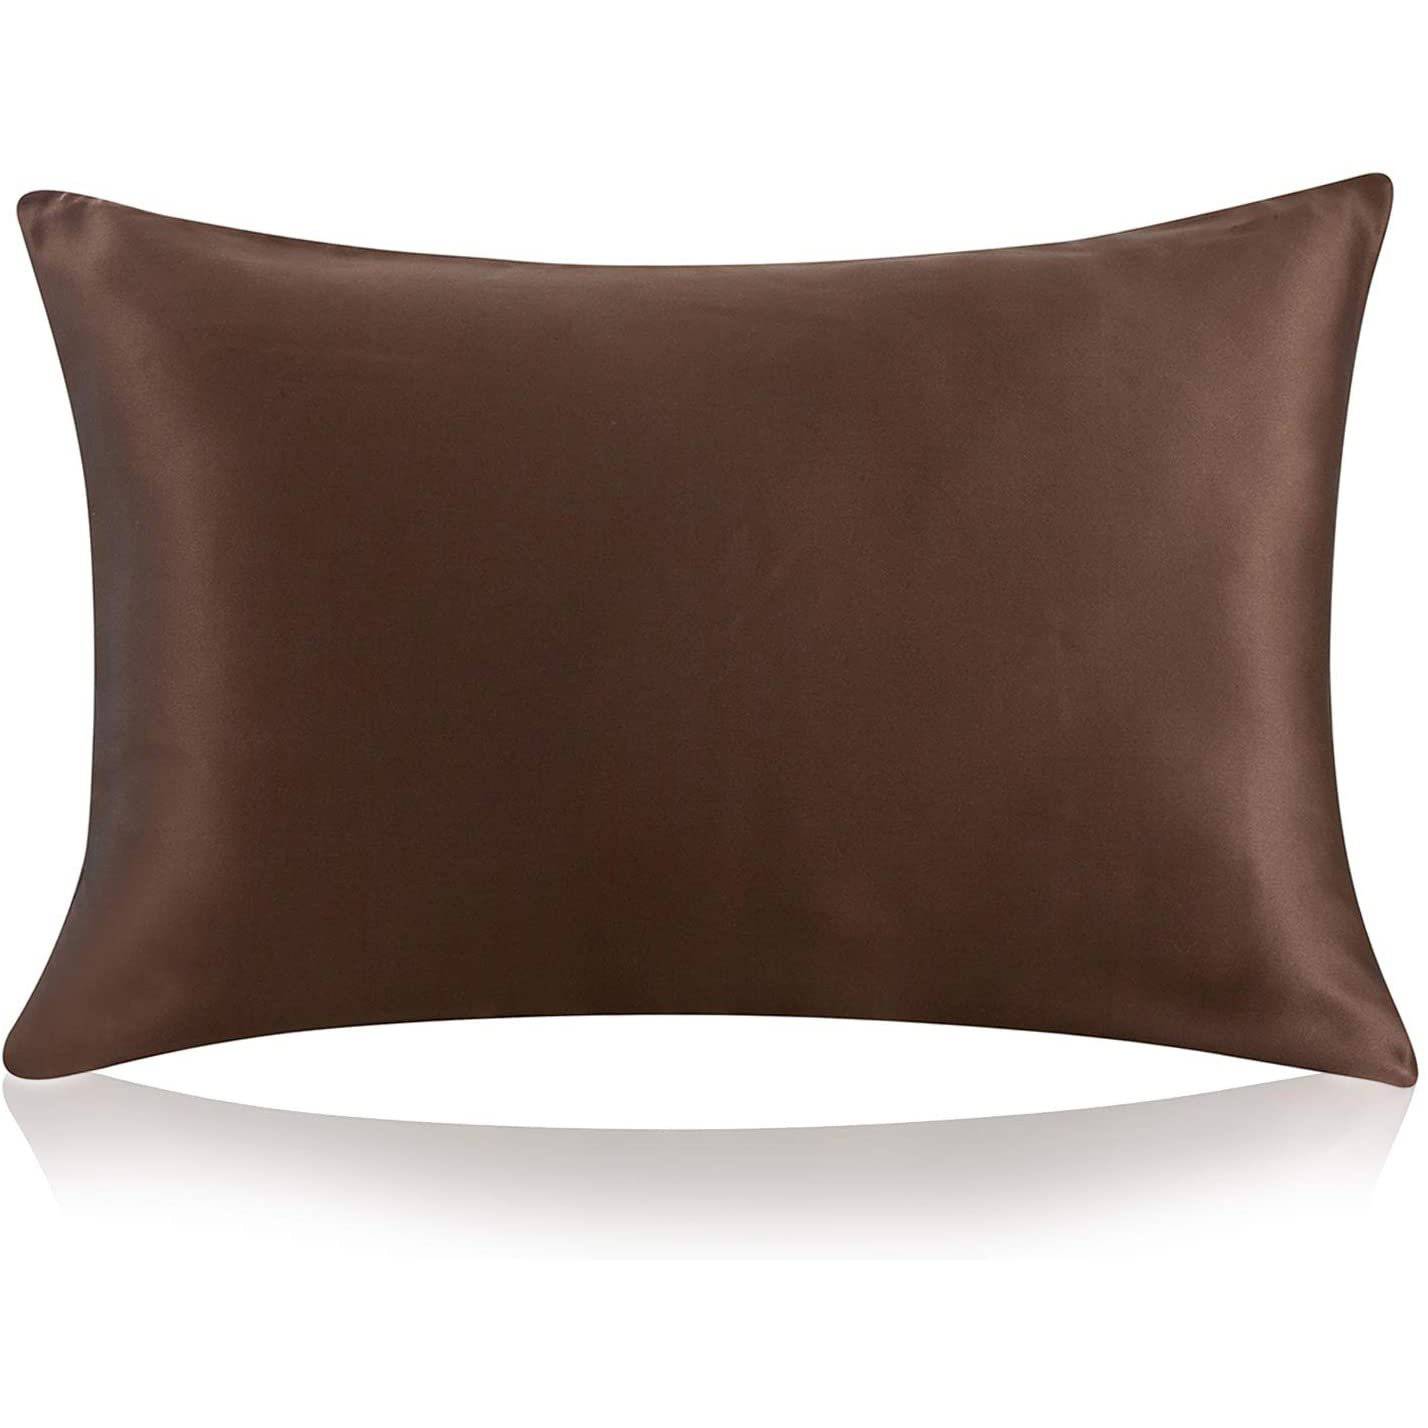 25 Momme Silk Pillowcase with Hidden Zipper -  slipintosoft